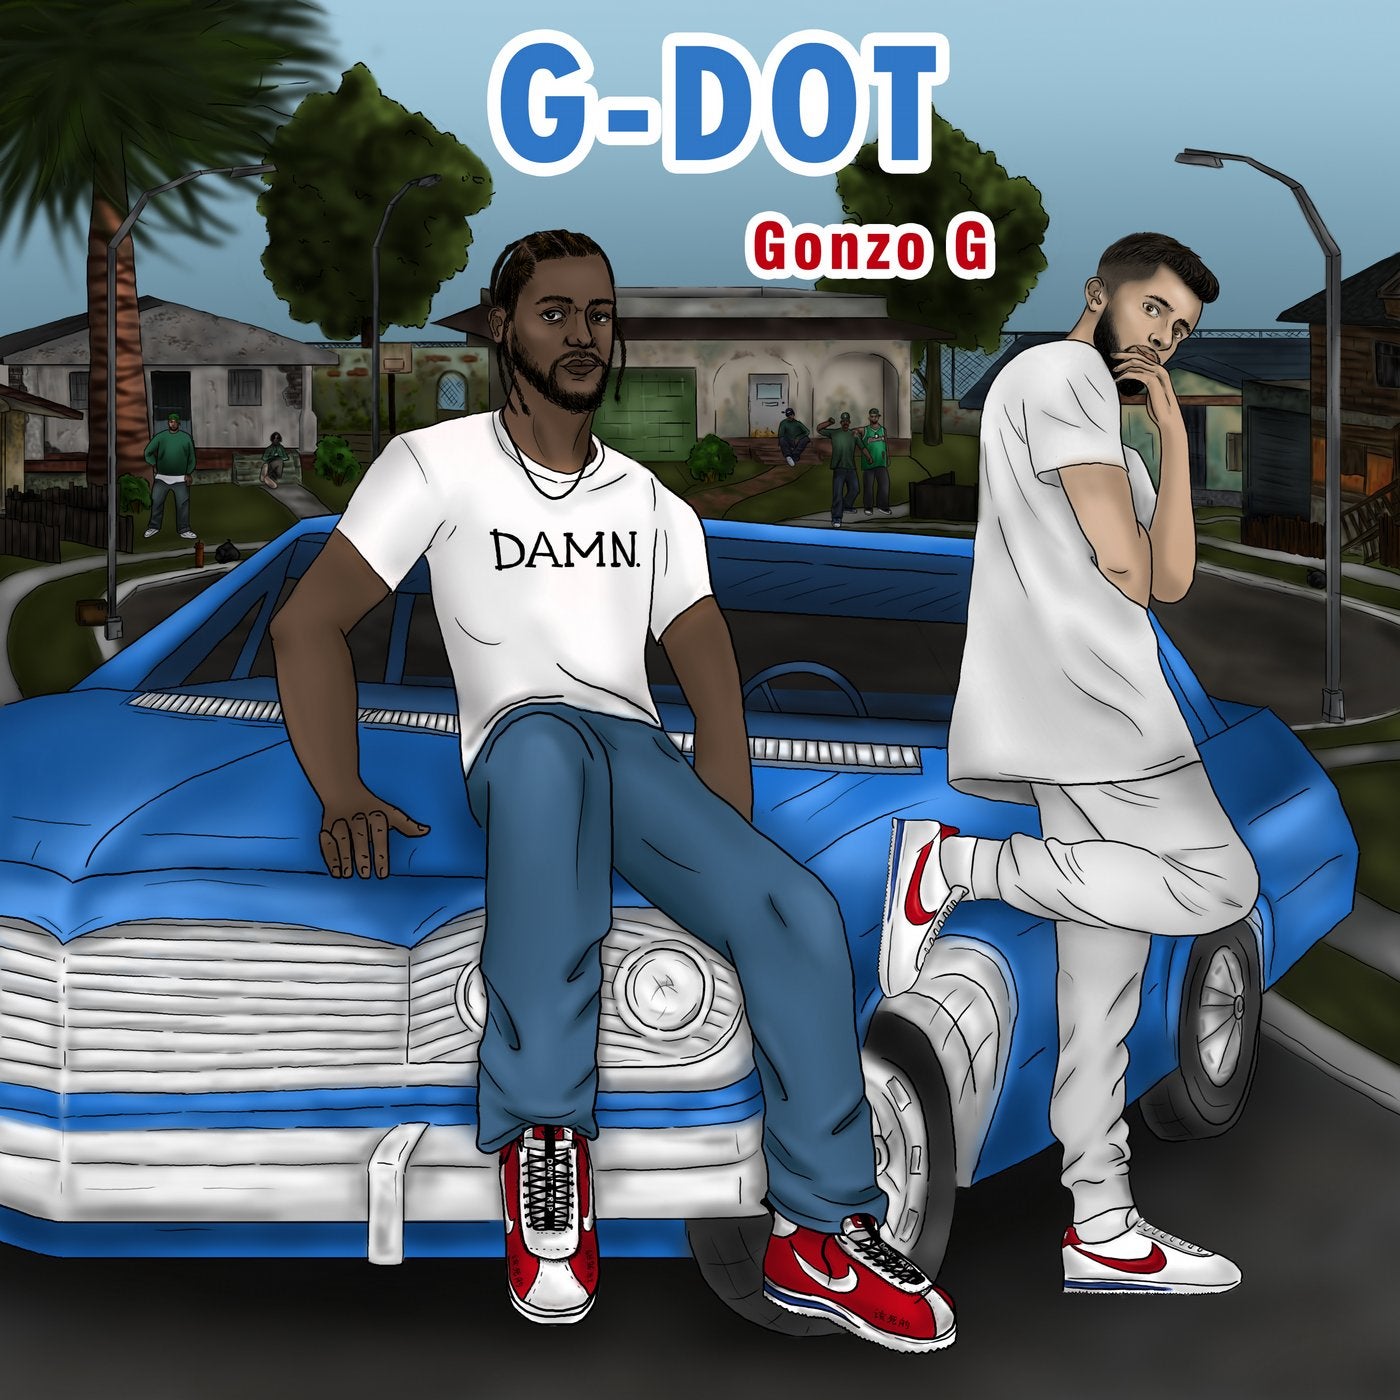 G-Dot